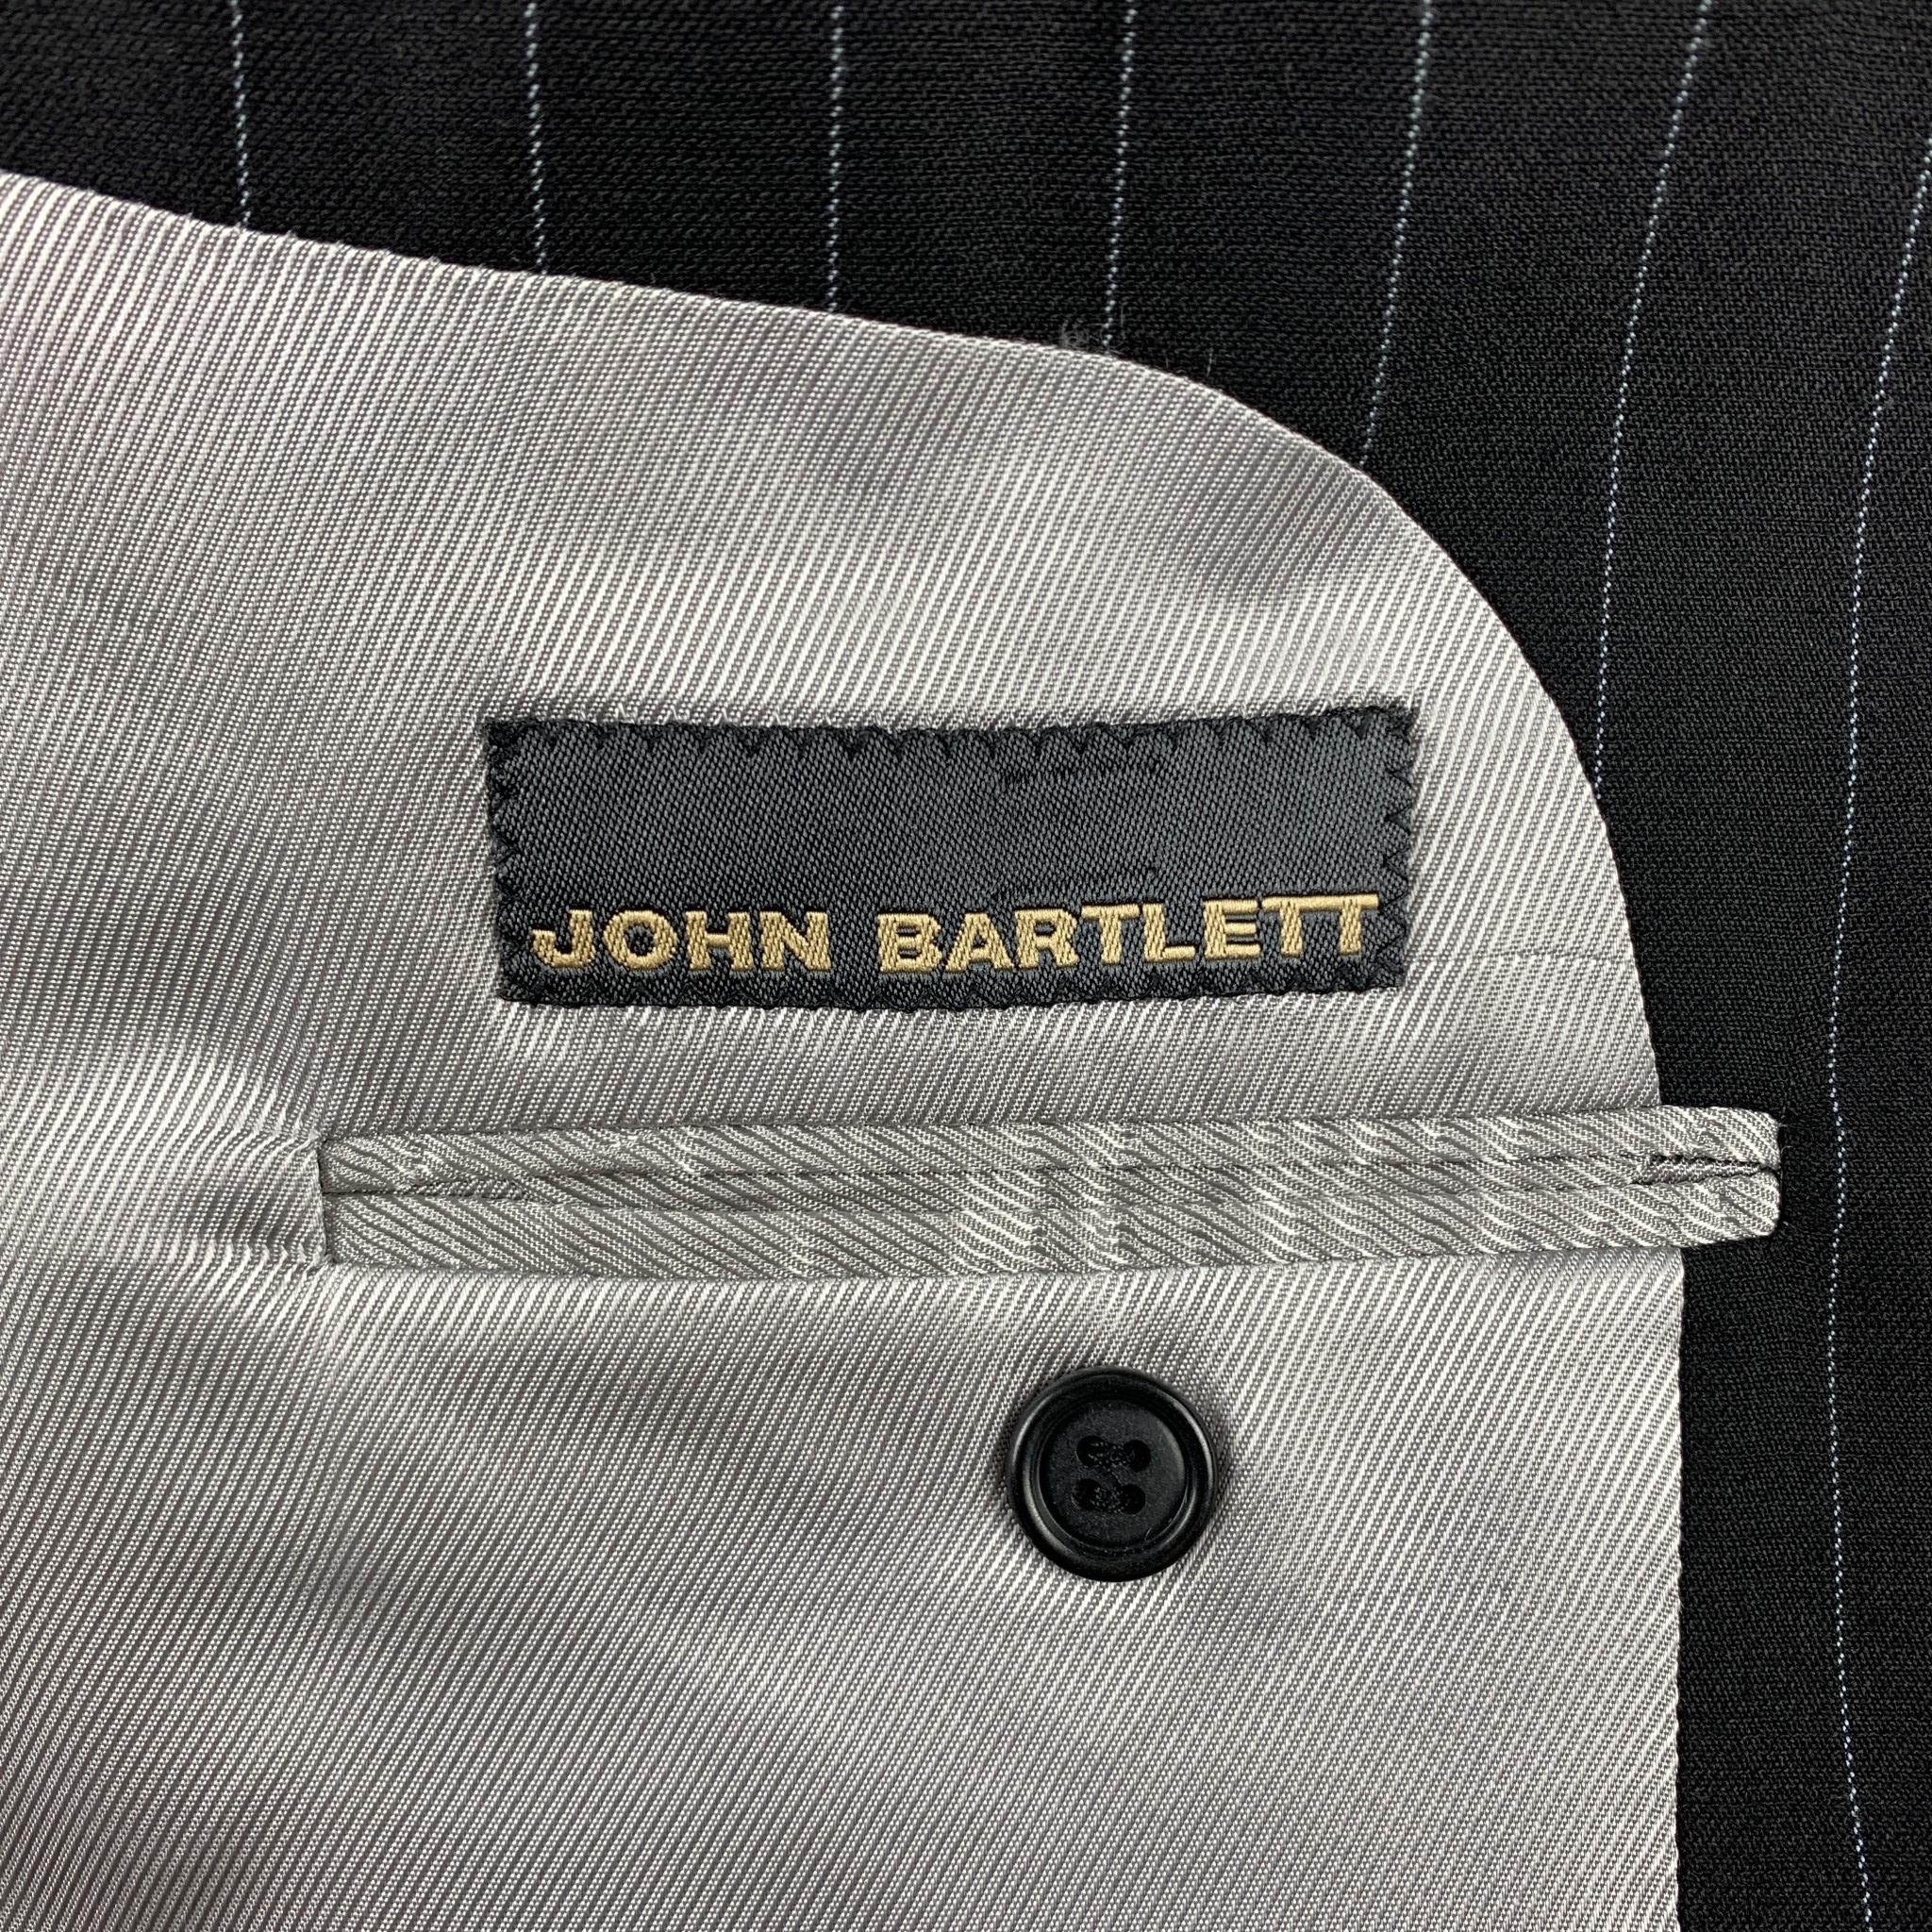 JOHN BARTLETT Size 40 Regular Black Chalkstripe Wool Notch Lapel Suit 3